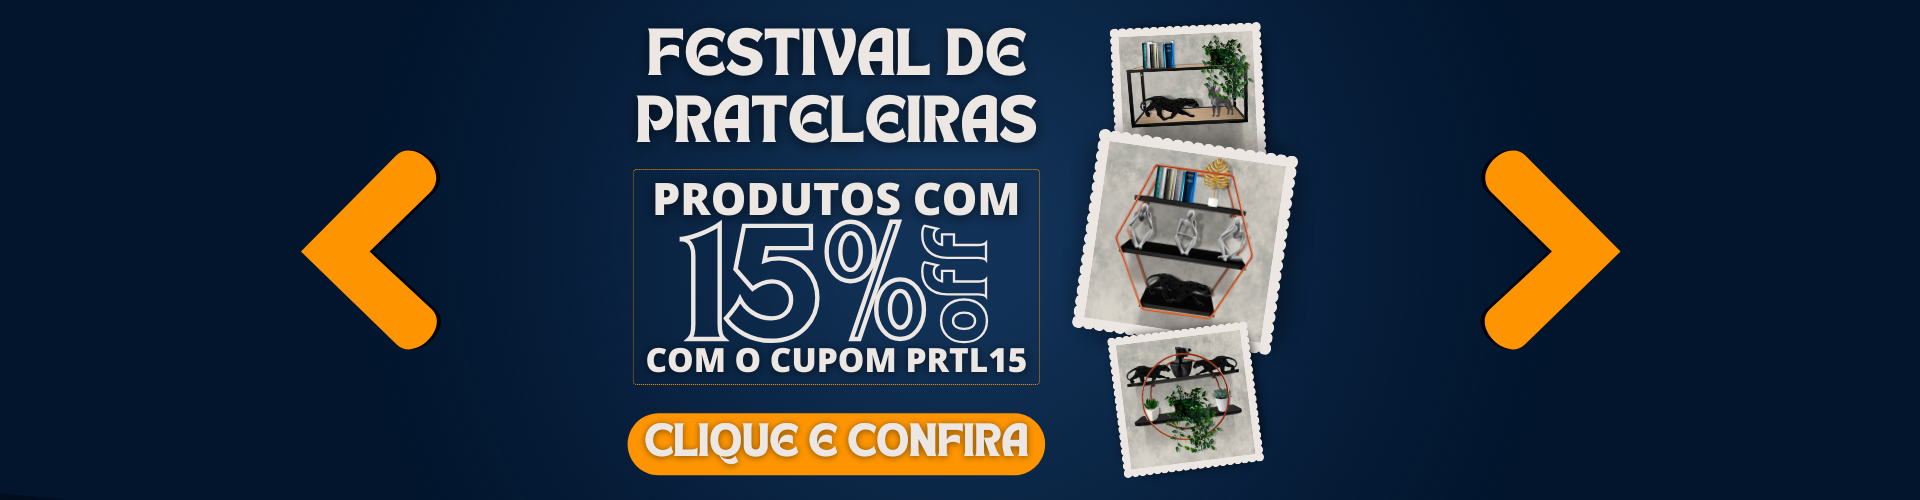 Festival de Prateleiras - Cupom 15%OFF